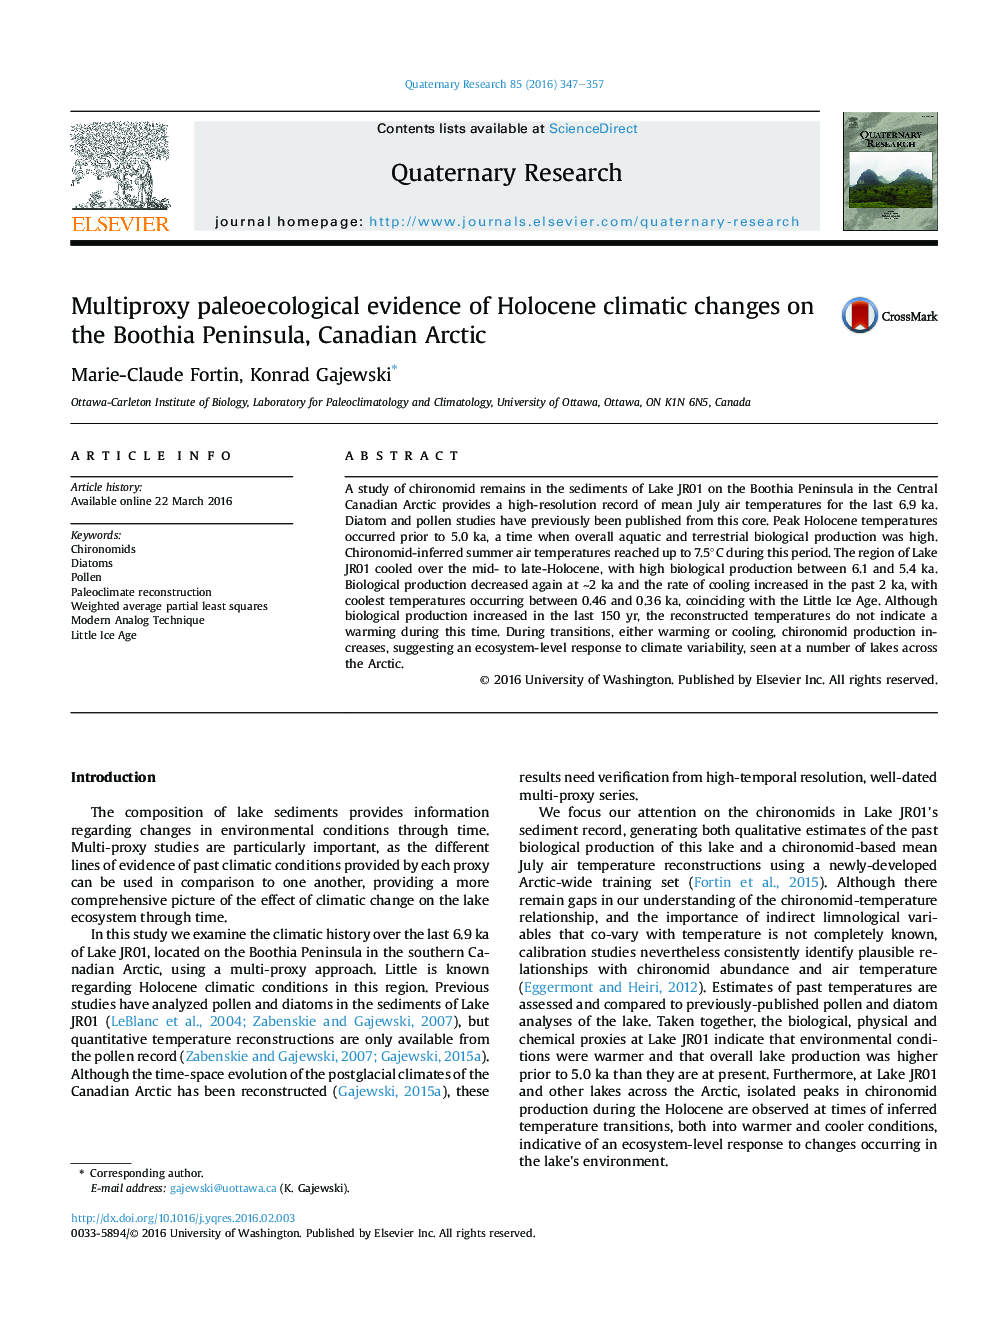 شواهد چند پراکسی paleoecological از تغییرات اقلیمی هولوسن در شبه جزیره بووتیا، قطب شمال کانادا